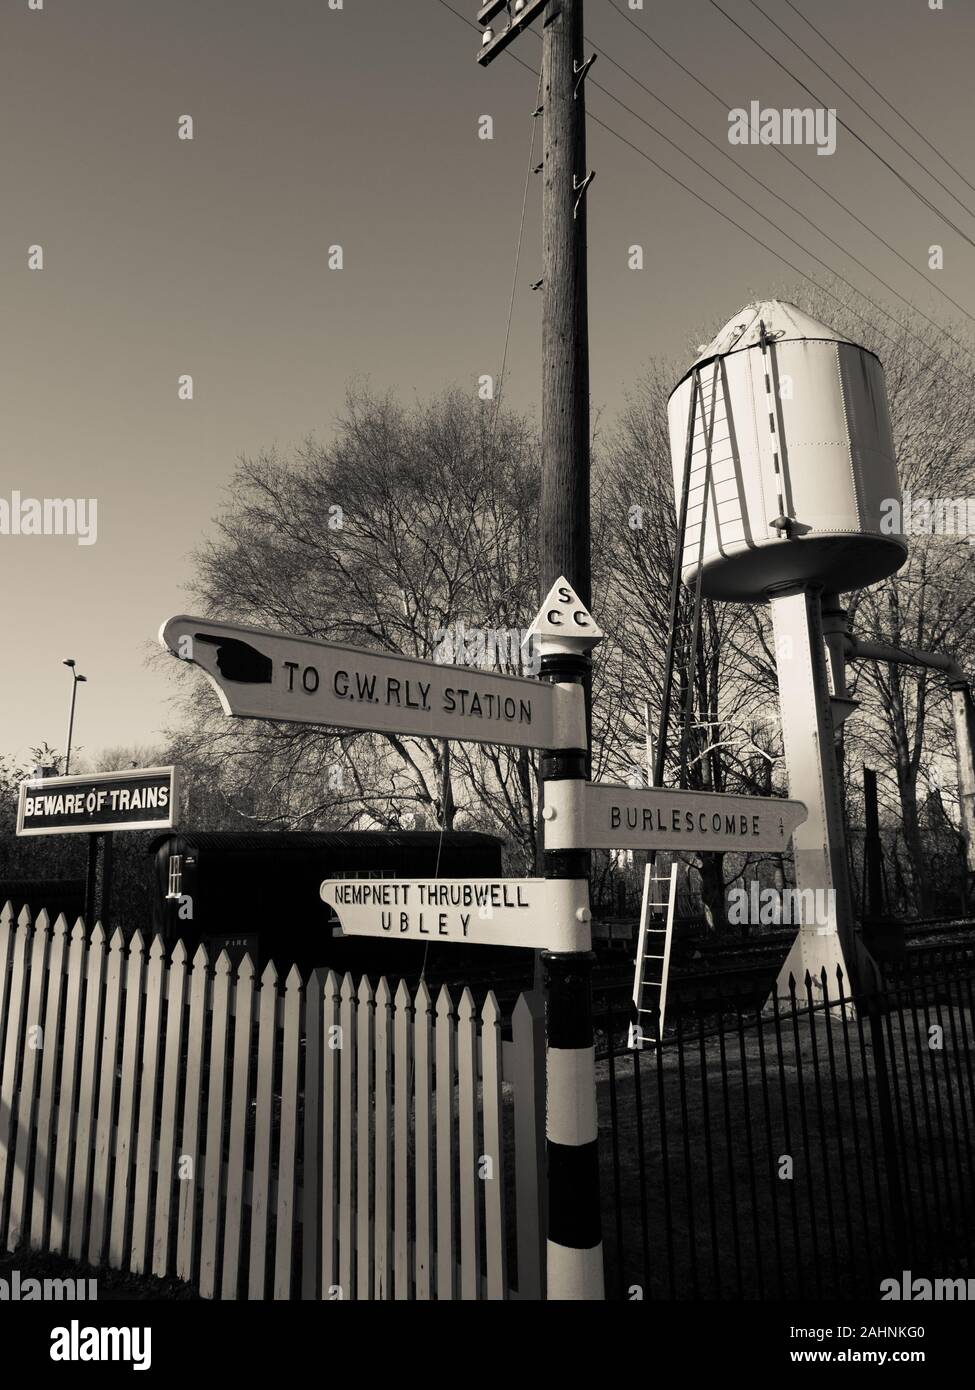 Paysage ferroviaire noir et blanc, Didcot, Oxfordshire, Angleterre, Royaume-Uni, GB. Banque D'Images